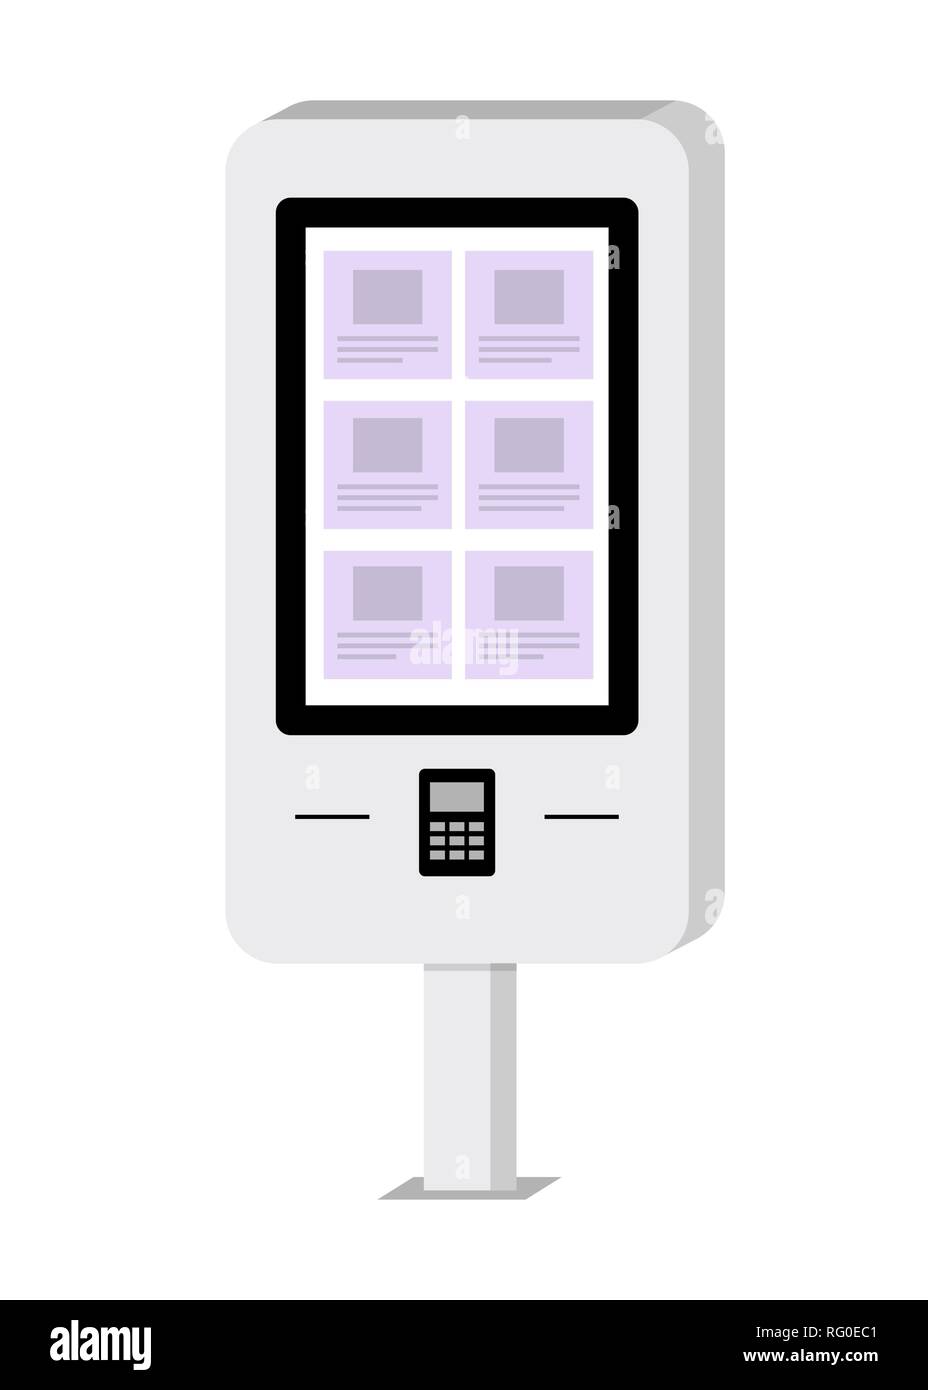 Zahlung und Informationen elektronische Terminal mit Touchscreen. ATM. Sb-Terminal. Vector Illustration im flachen Stil Stock Vektor